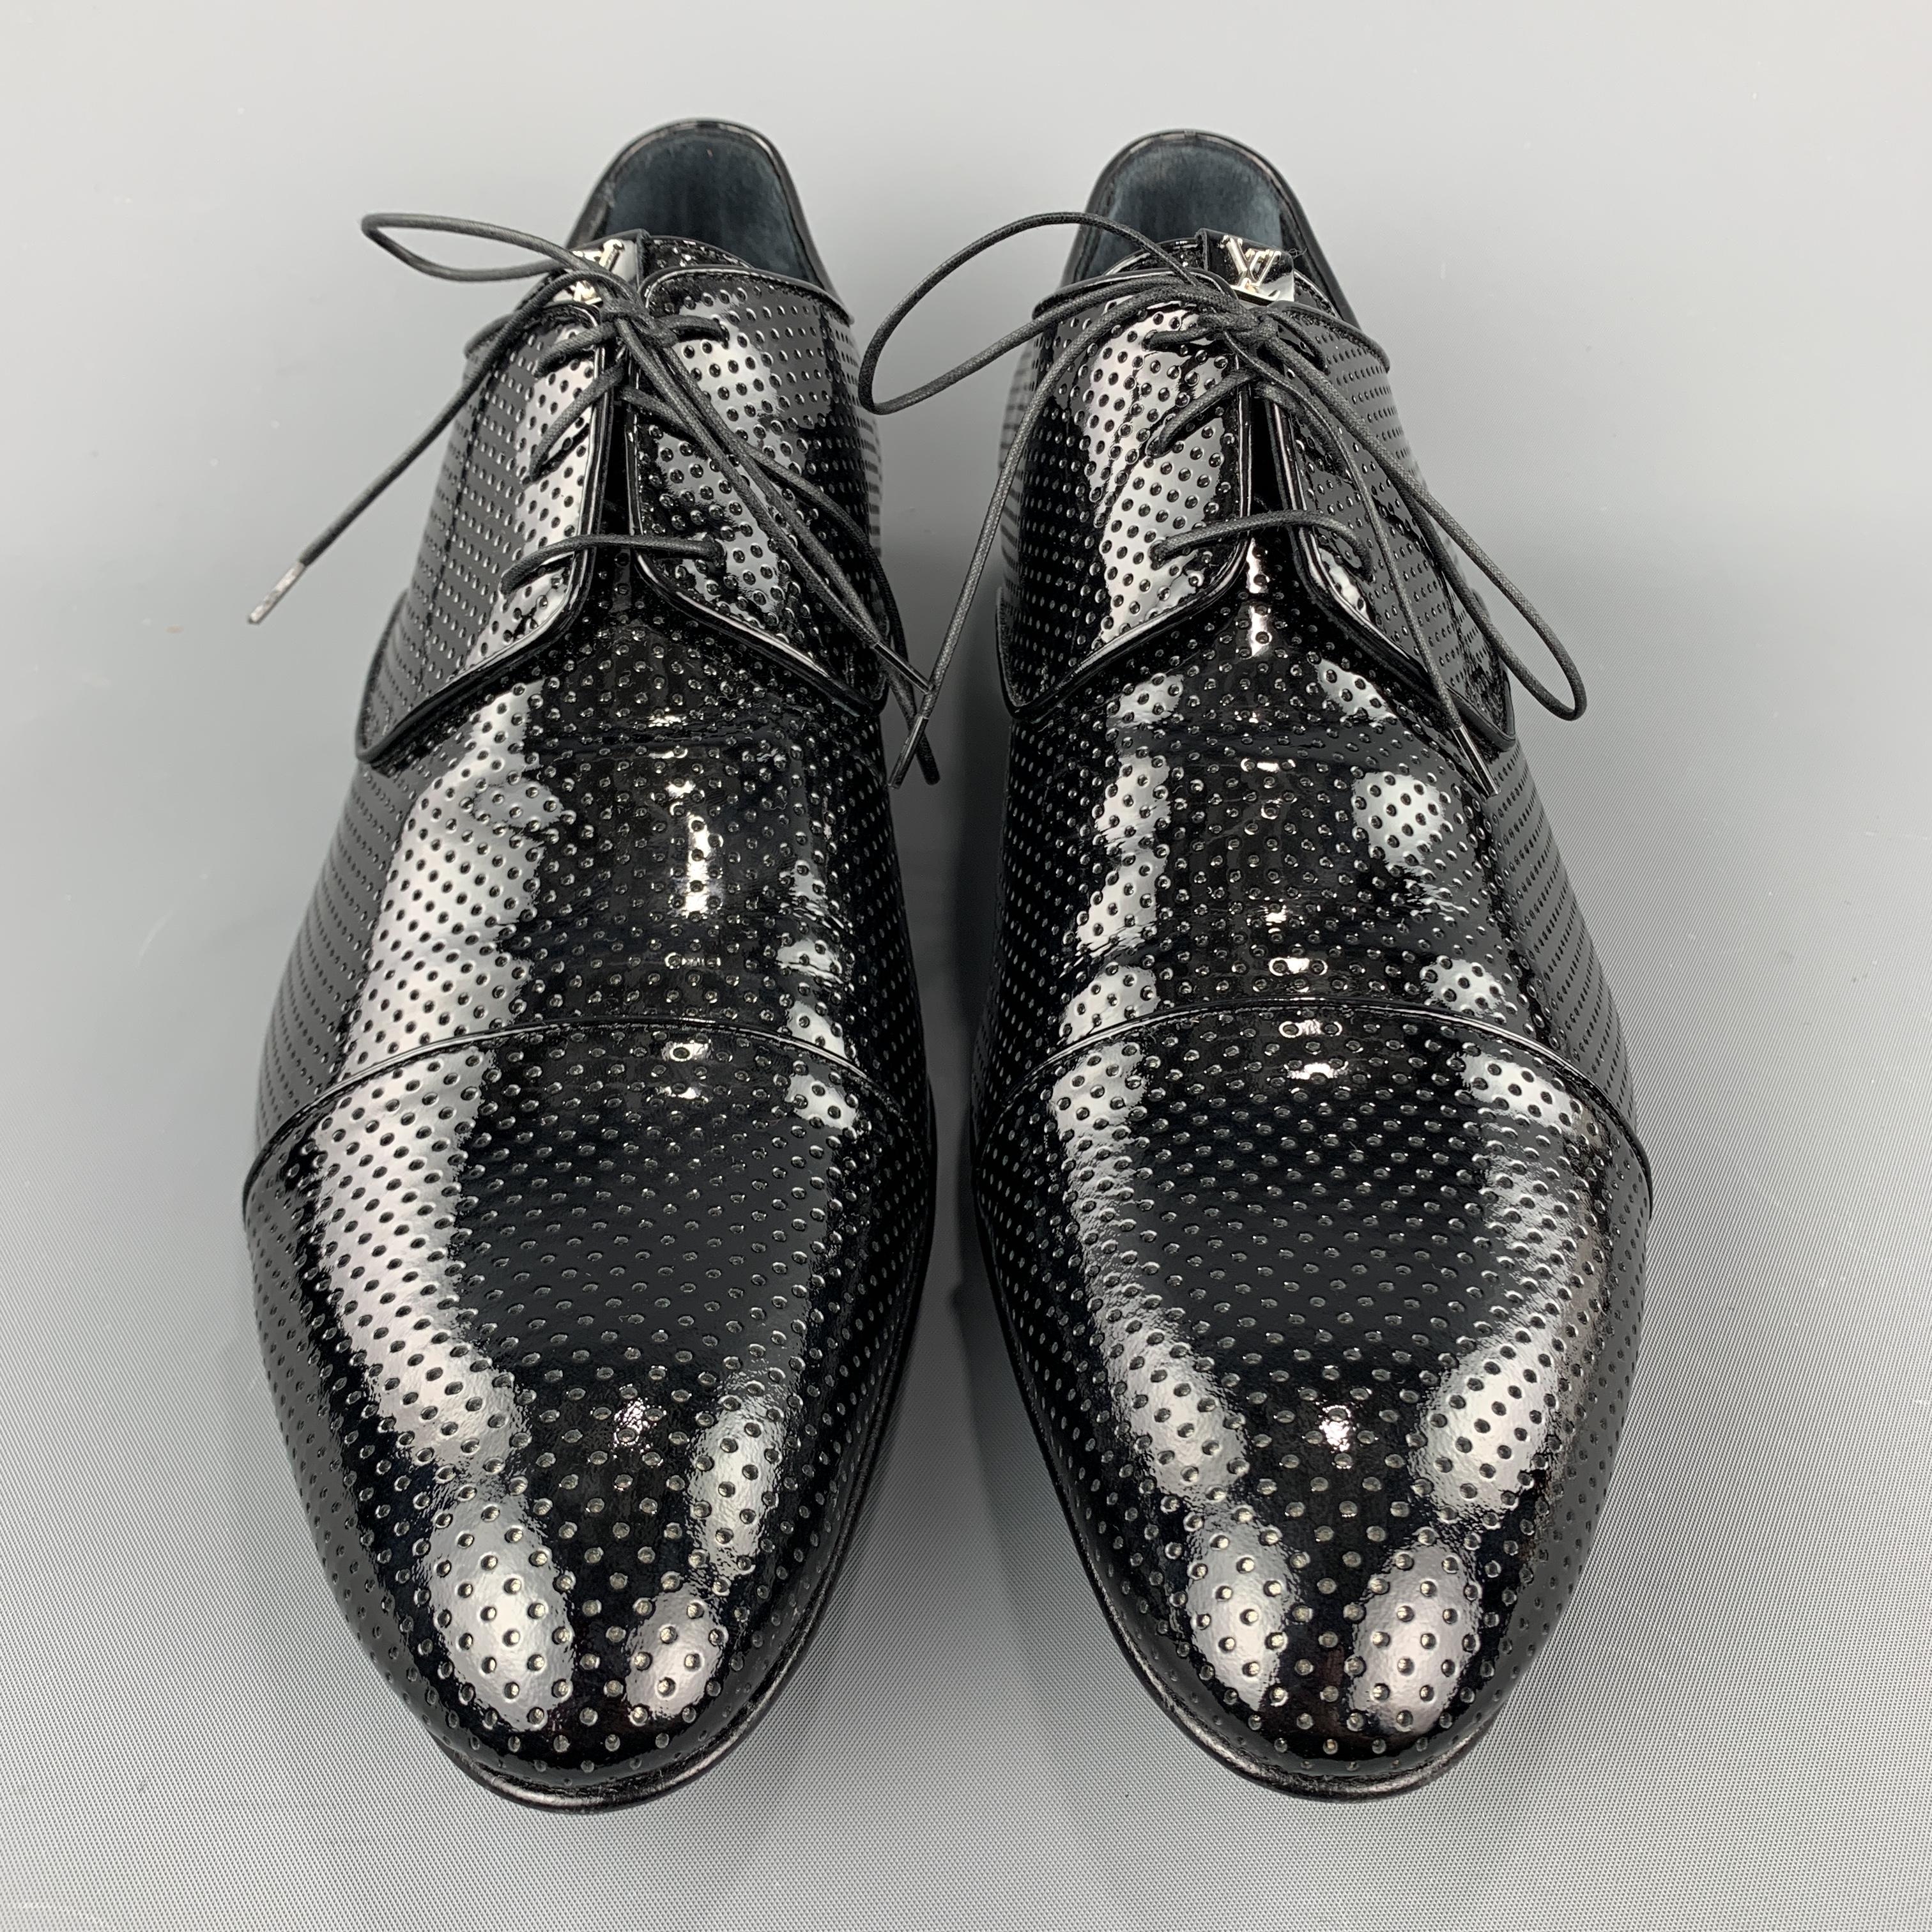 Men's LOUIS VUITTON Size 11 Perforated Black Lace Up Shoe